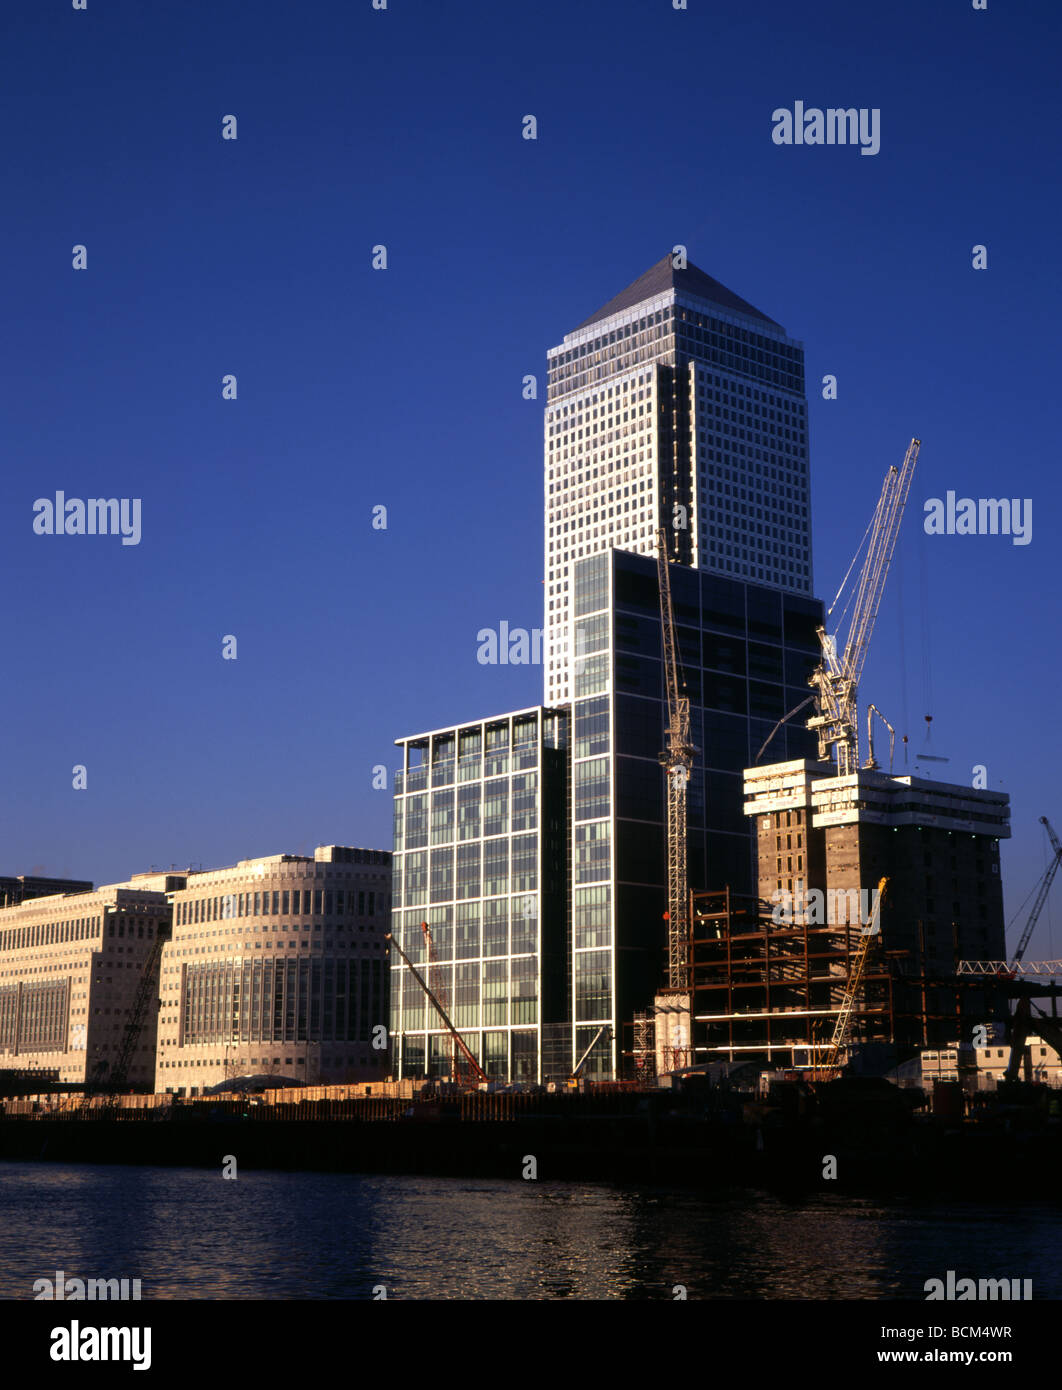 Construction à Canary Wharf Docklands Londres à la fin des années 1990 Banque D'Images